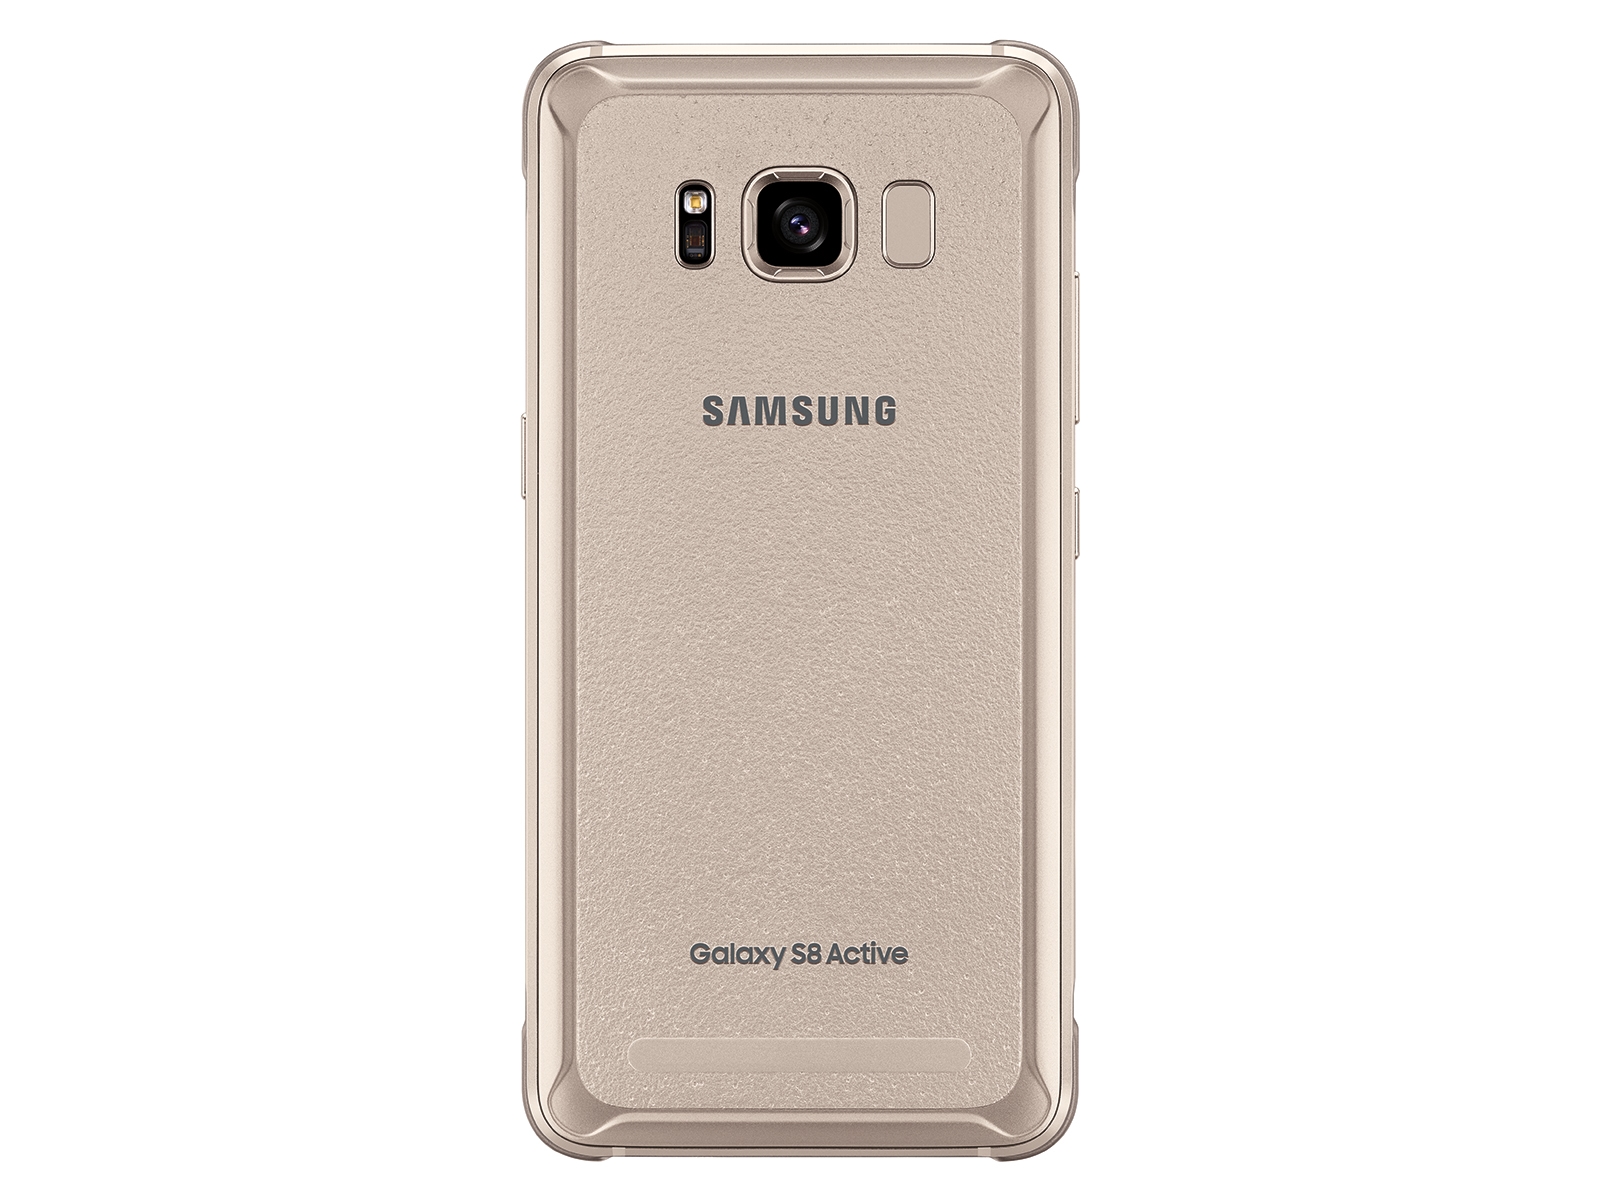 Thumbnail image of Galaxy S8 Active 64GB (AT&T)